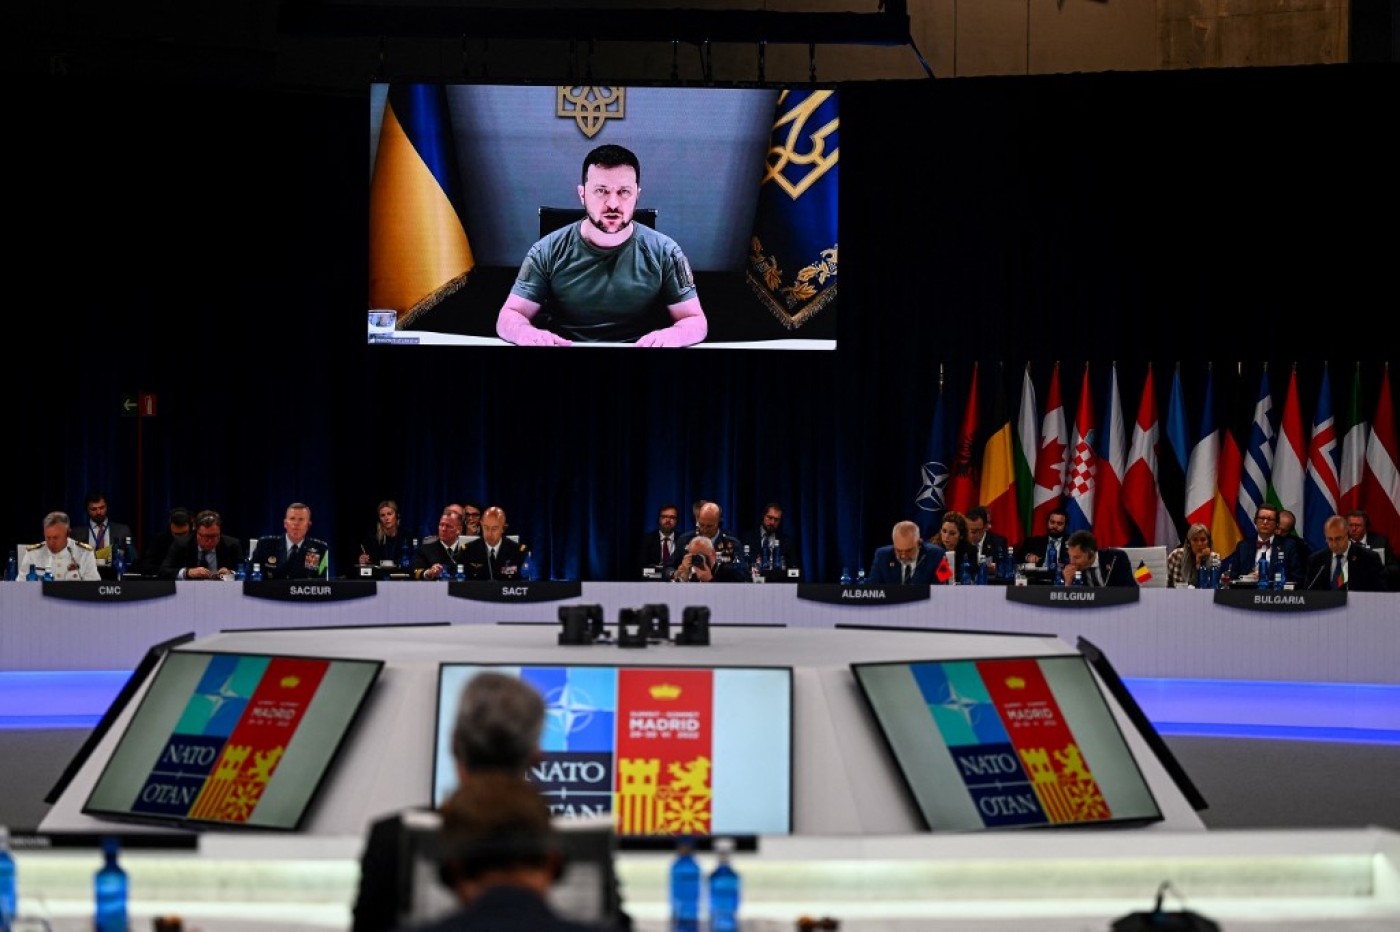 Le président ukrainien Volodymyr Zelensky apparaît sur un écran géant lors de son intervention au sommet de l’OTAN à Madrid, le 29 juin 2022 (AFP)